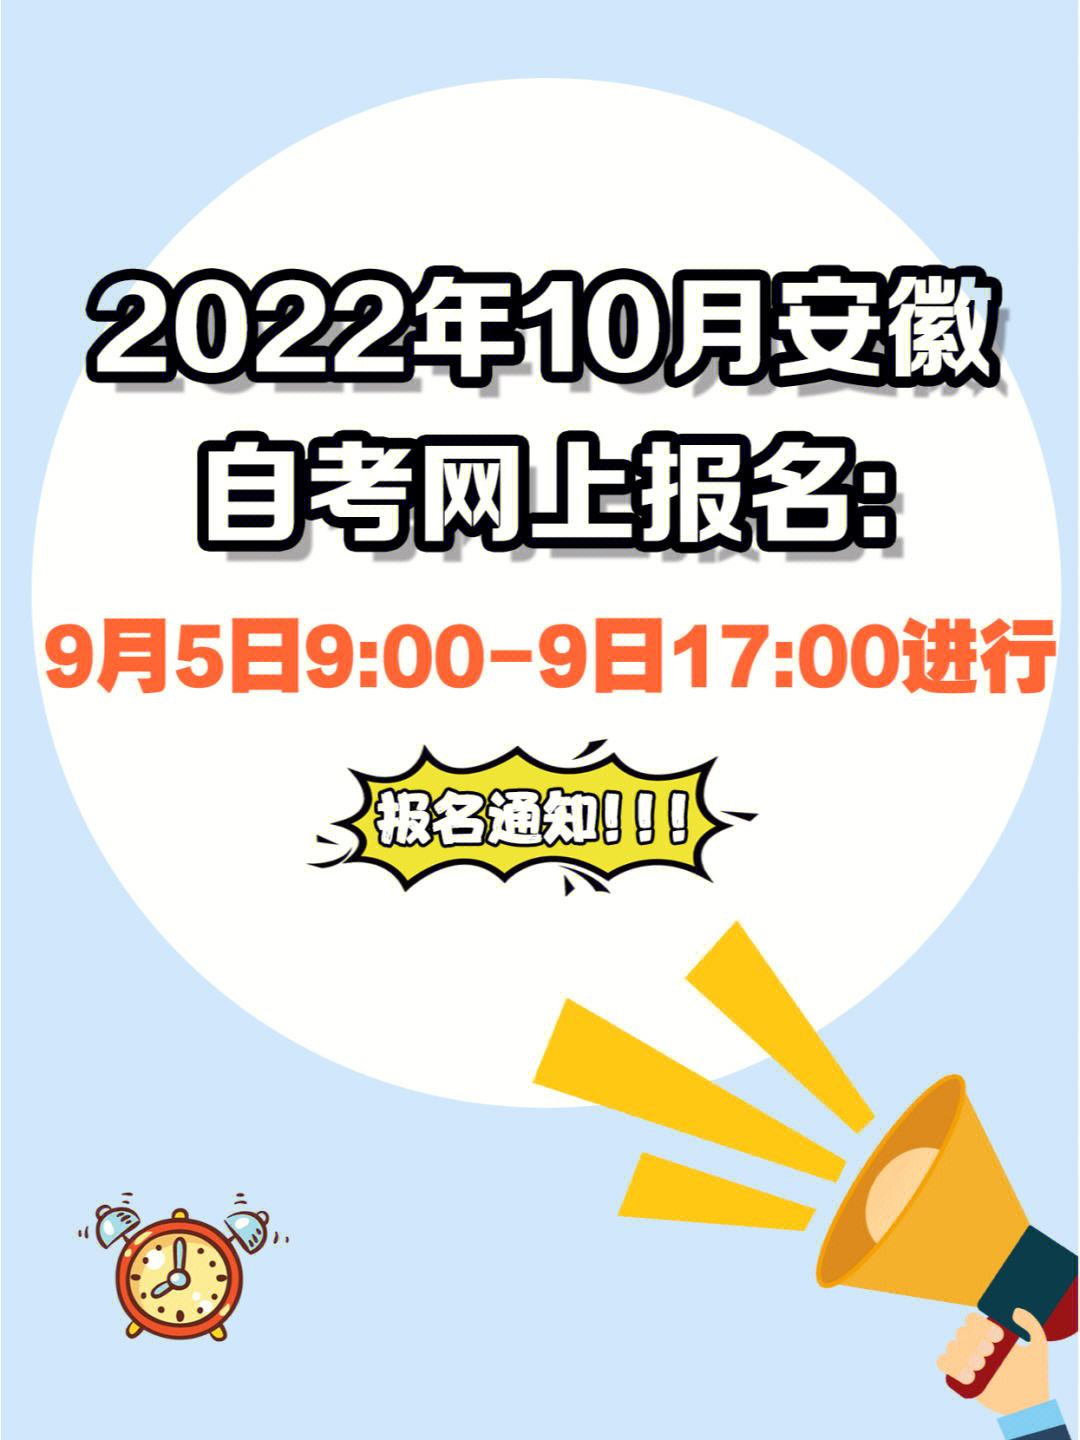 【德化县自考报名时间】“景德镇市2019年7月自考报名时间”怎么做？